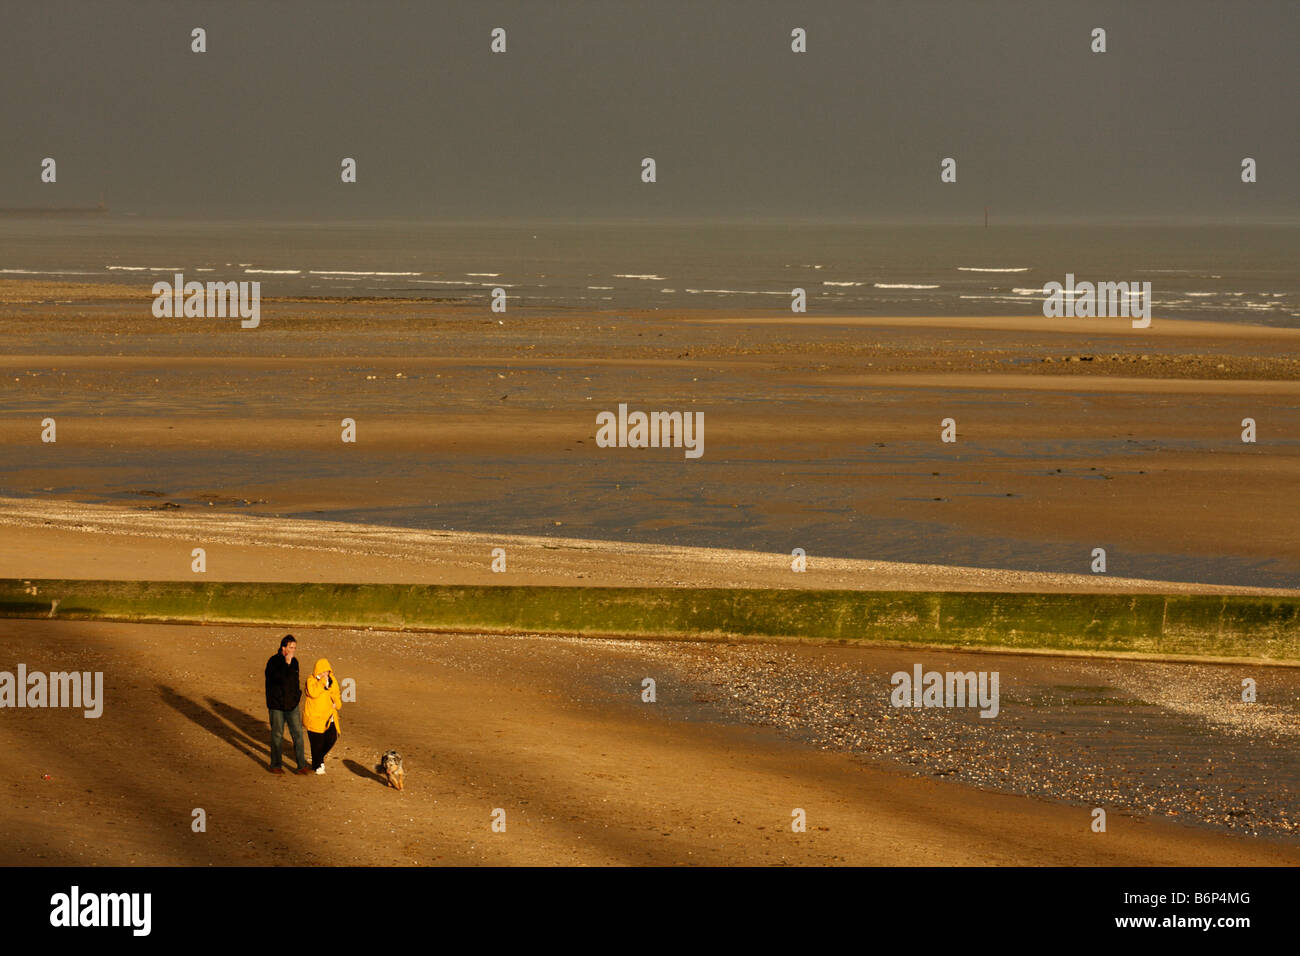 Deux personnes et un chien à marcher le long de la plage de Swansea au soleil avec un ciel d'orage, West Glamorgan, Pays de Galles, Royaume-Uni Banque D'Images